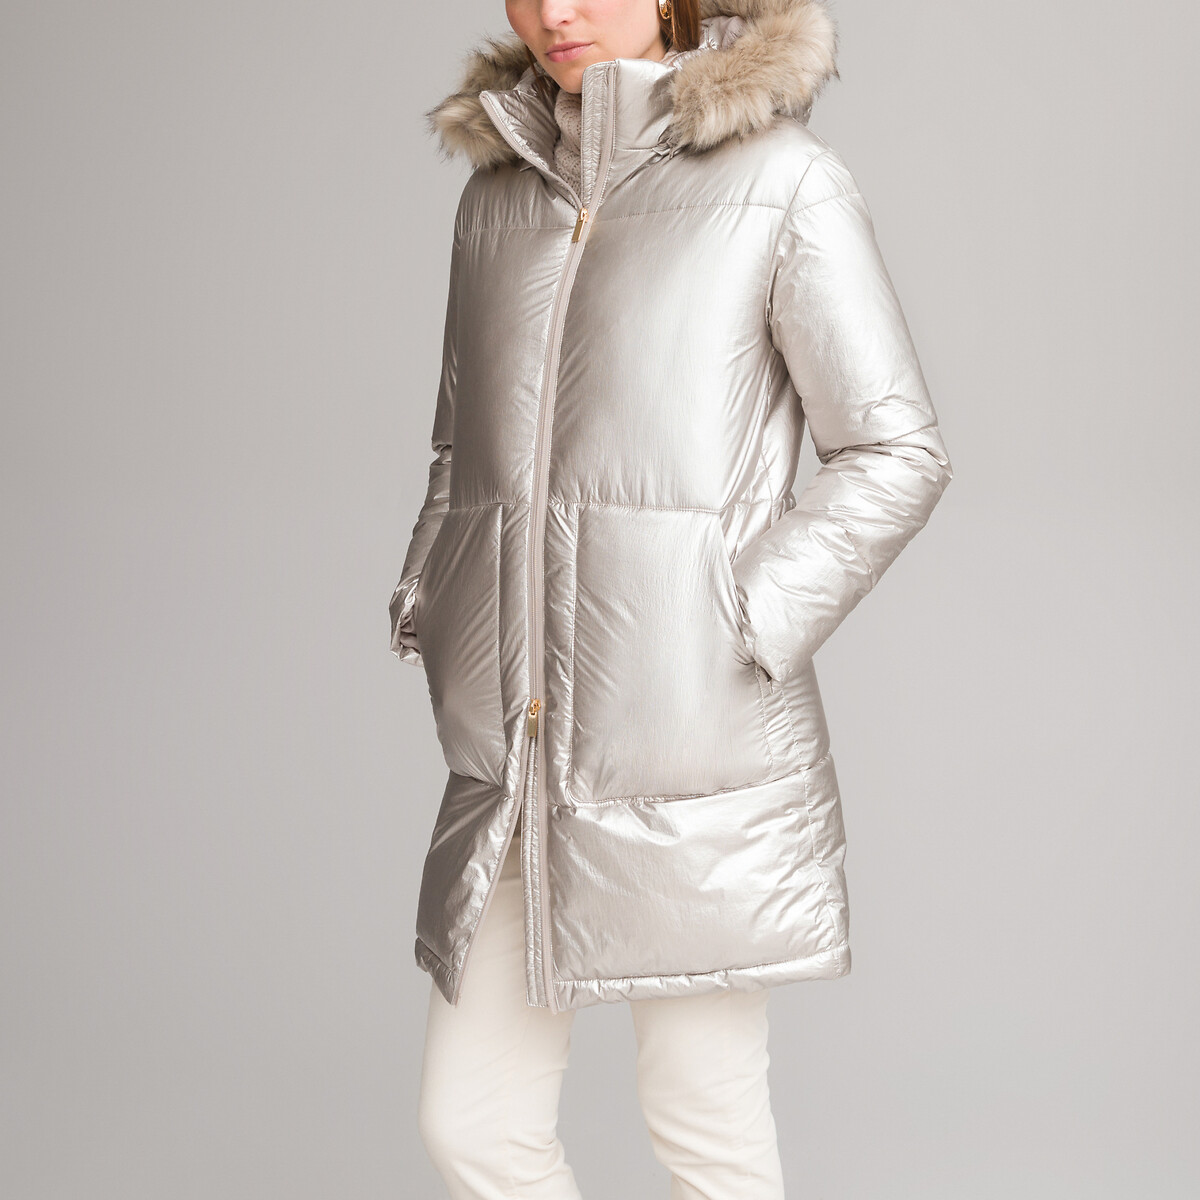 Куртка стеганая зимняя средней длины съемный капюшон 50 (FR) - 56 (RUS) серый пончо демисезонное оверсайз средней длины капюшон размер 40 50 голубой